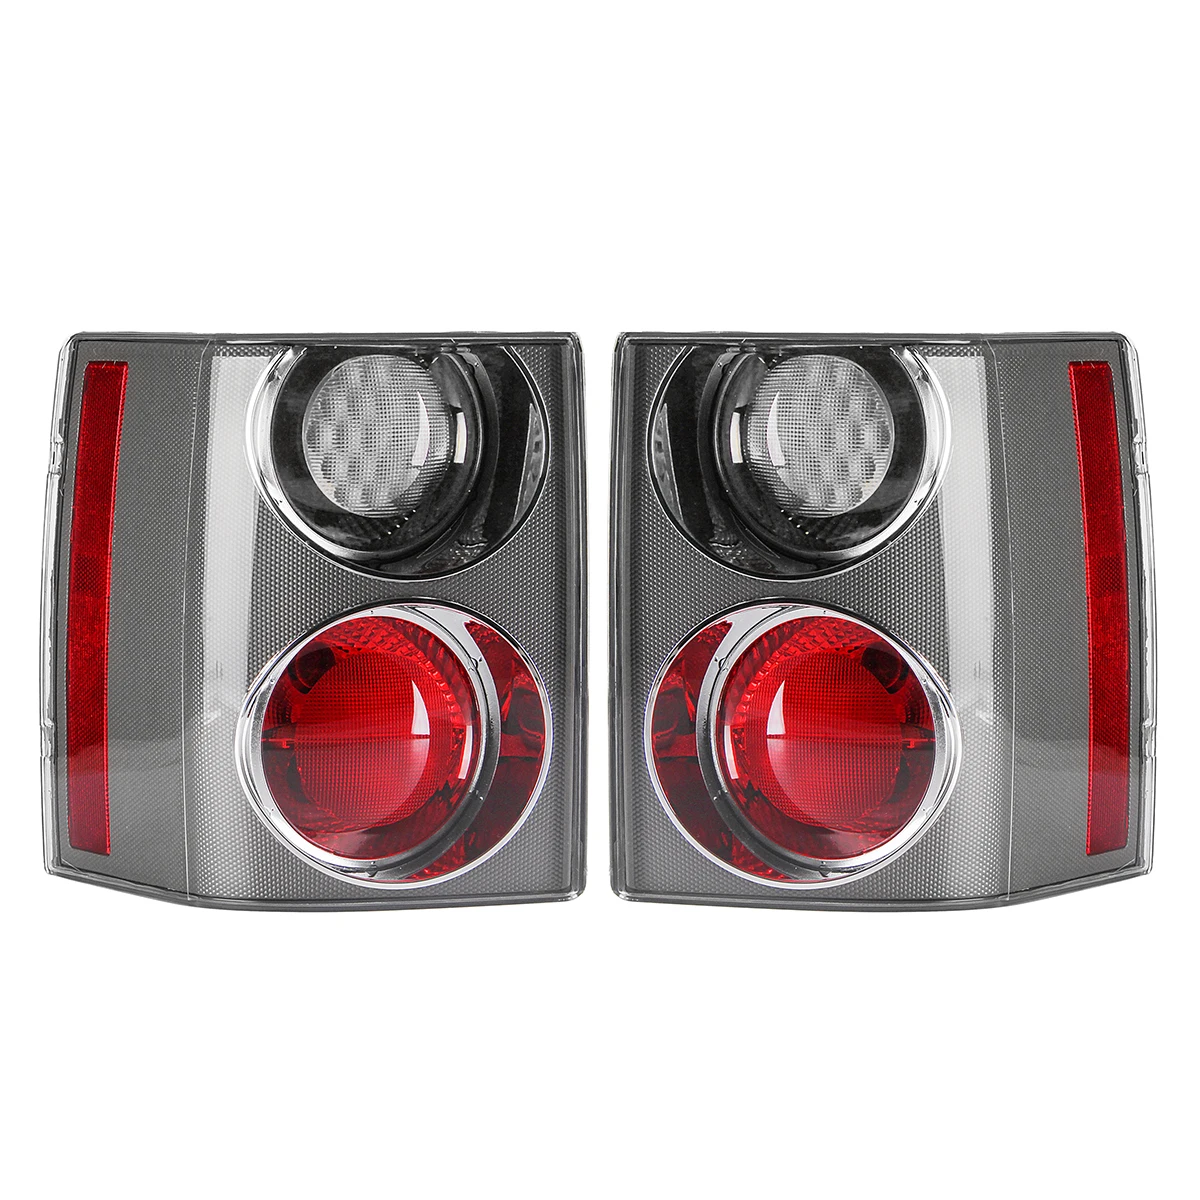 1 пара Автомобильный задний тормозной Стоп-светильник для Land Rover RANGE Rover VOGUE L322 2002 2003 2004 2005-2009 задние фонари отражатели аксессуары - Цвет: White and Red